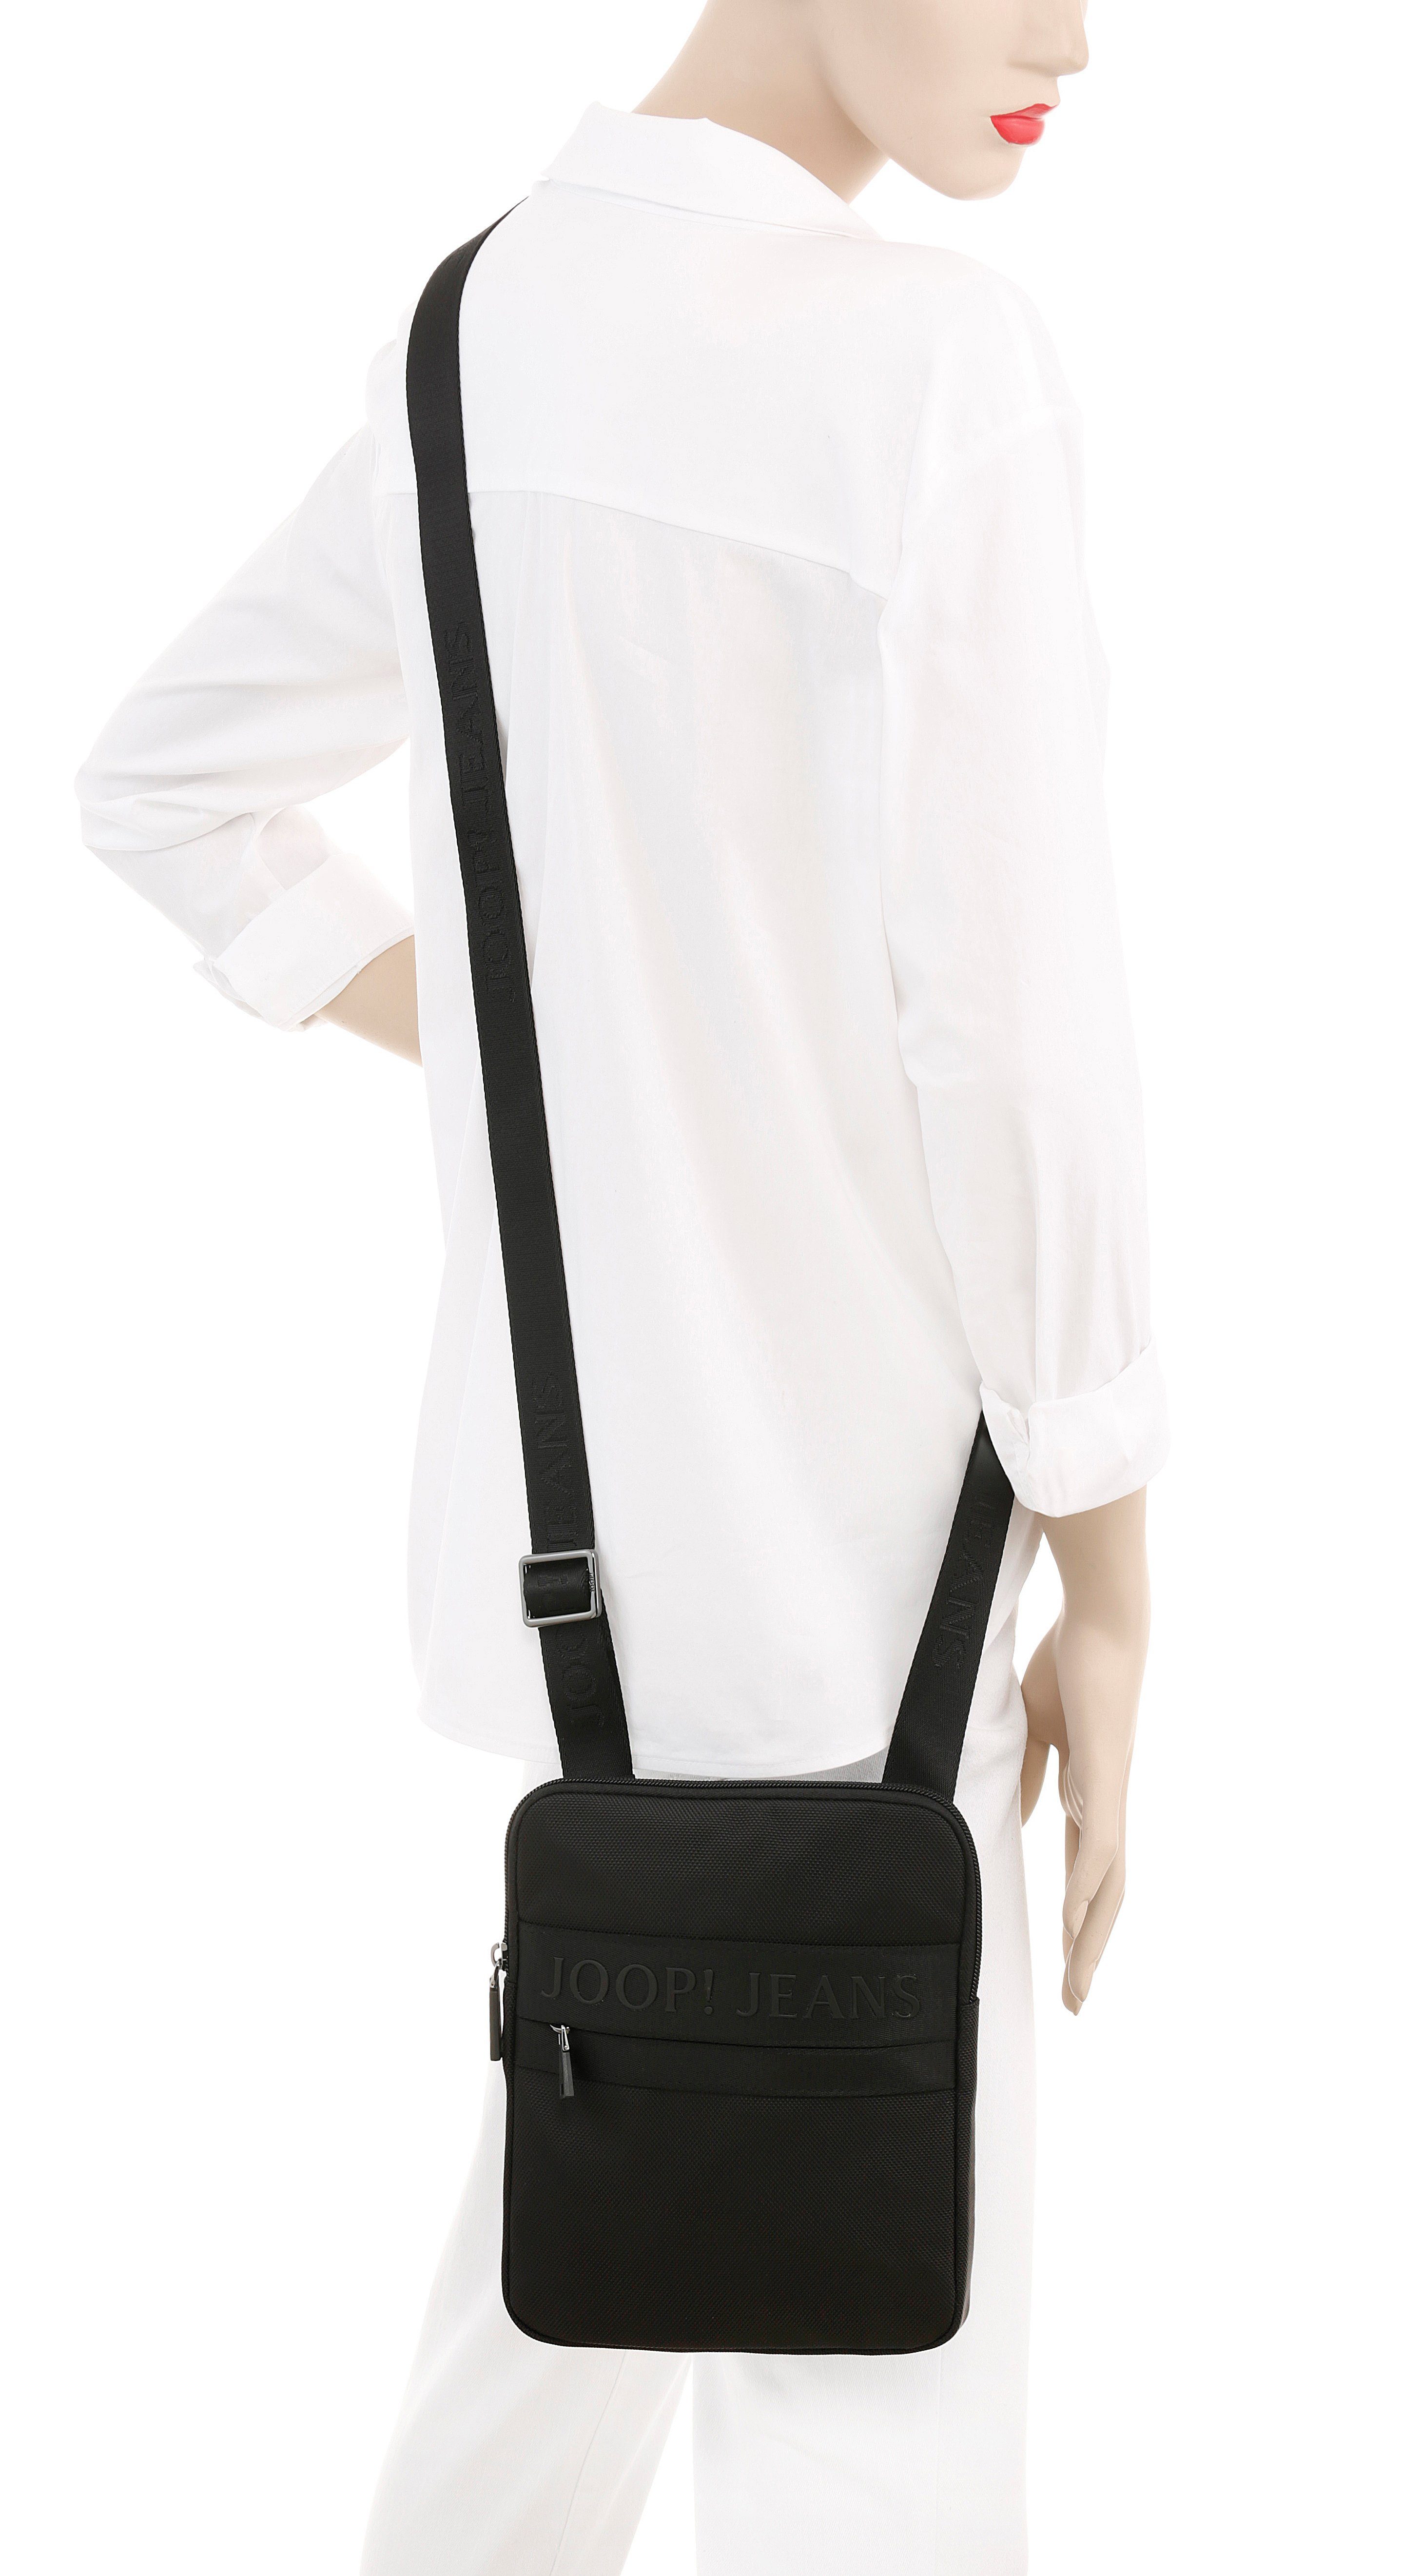 Joop Jeans Umhängetasche modica liam Stickerei shoulderbag Logo mit xsvz, schöner schwarz